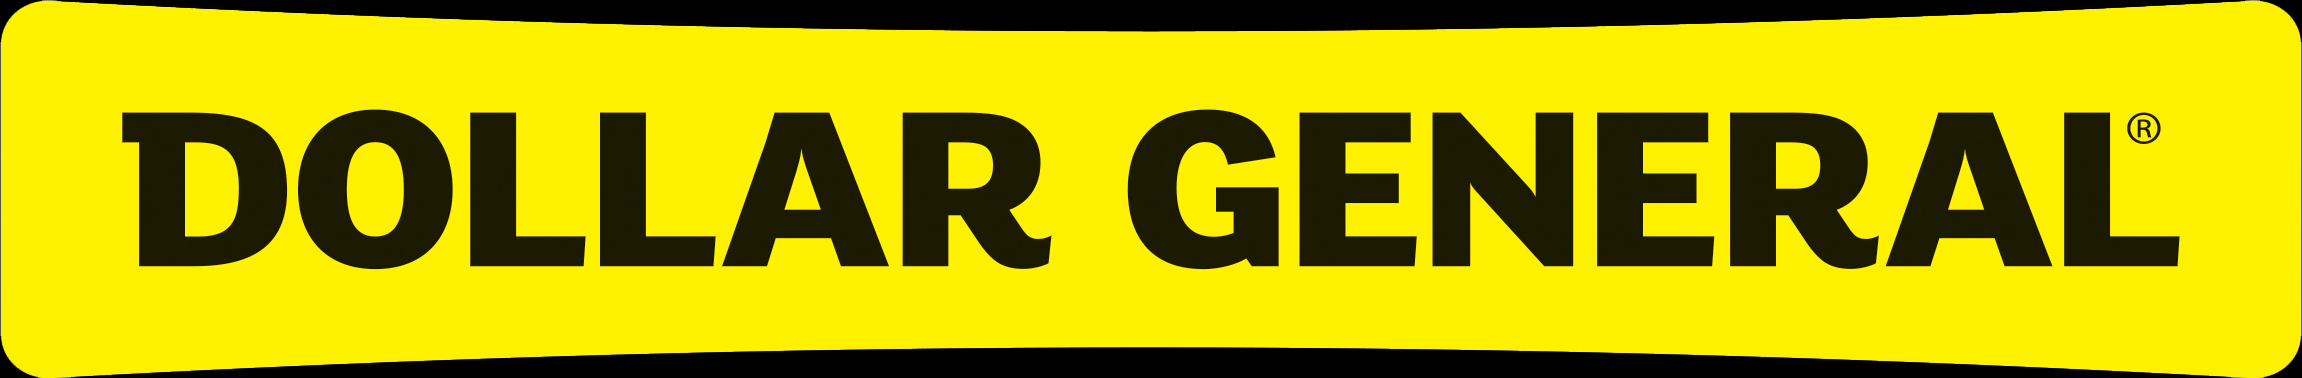 Dollar General logo image